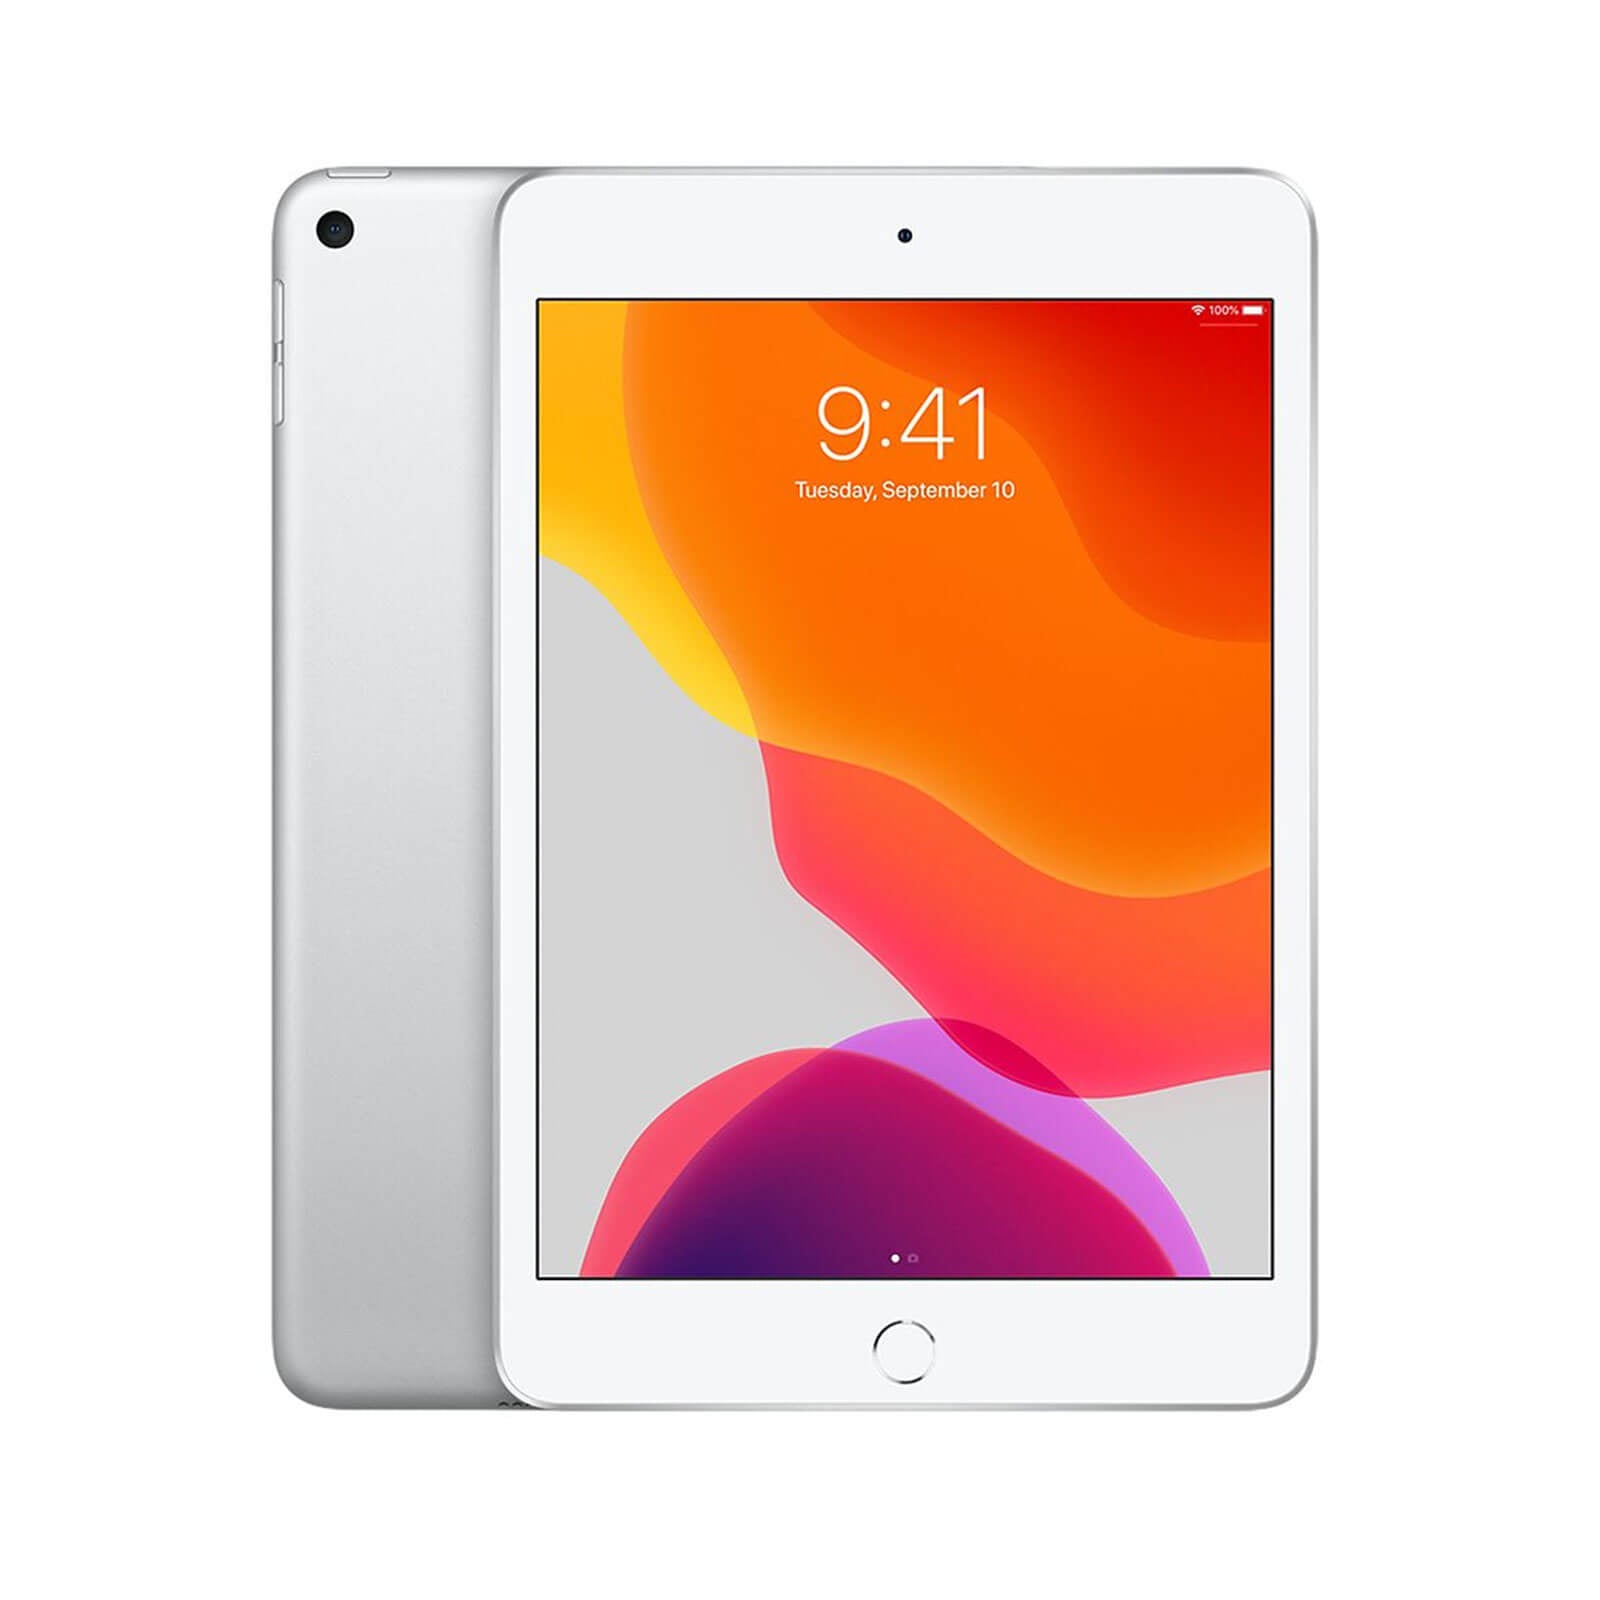 Apple iPad Mini 5 256GB Silver WiFi - Good 256GB Silver Good